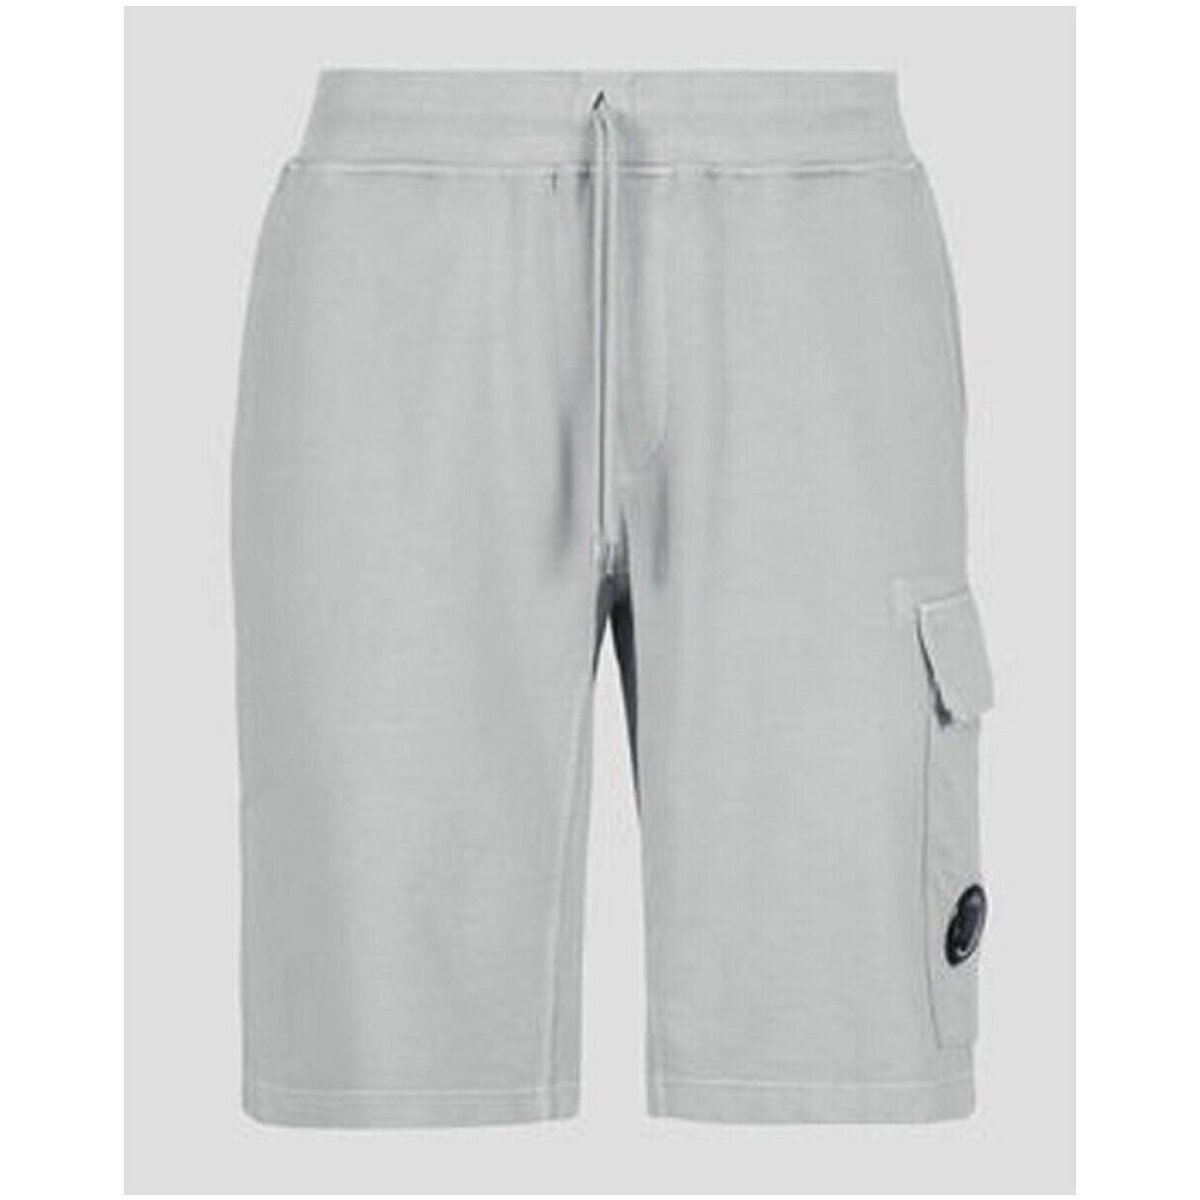 Vêtements Homme Shorts / Bermudas C.p. Company 14CMSB139A 005398R Gris